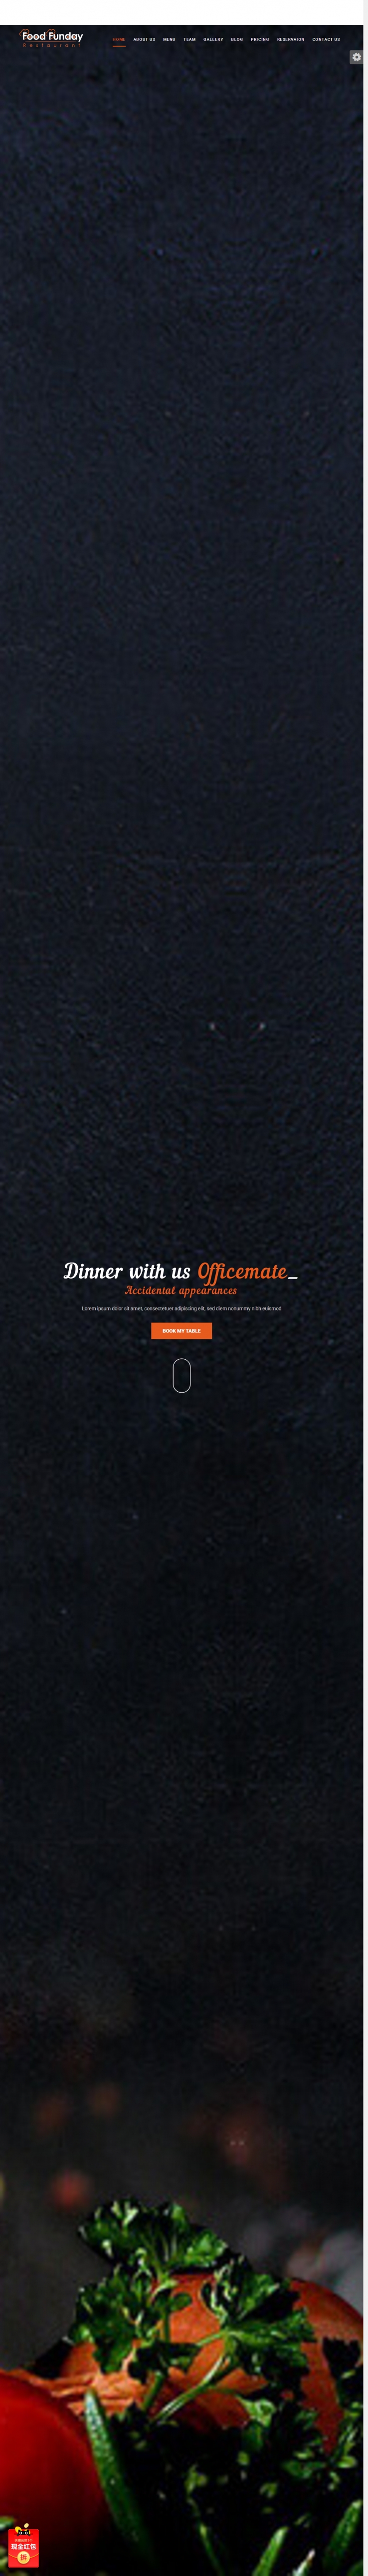 橙色炫酷的精品米其林餐厅企业网站模板下载